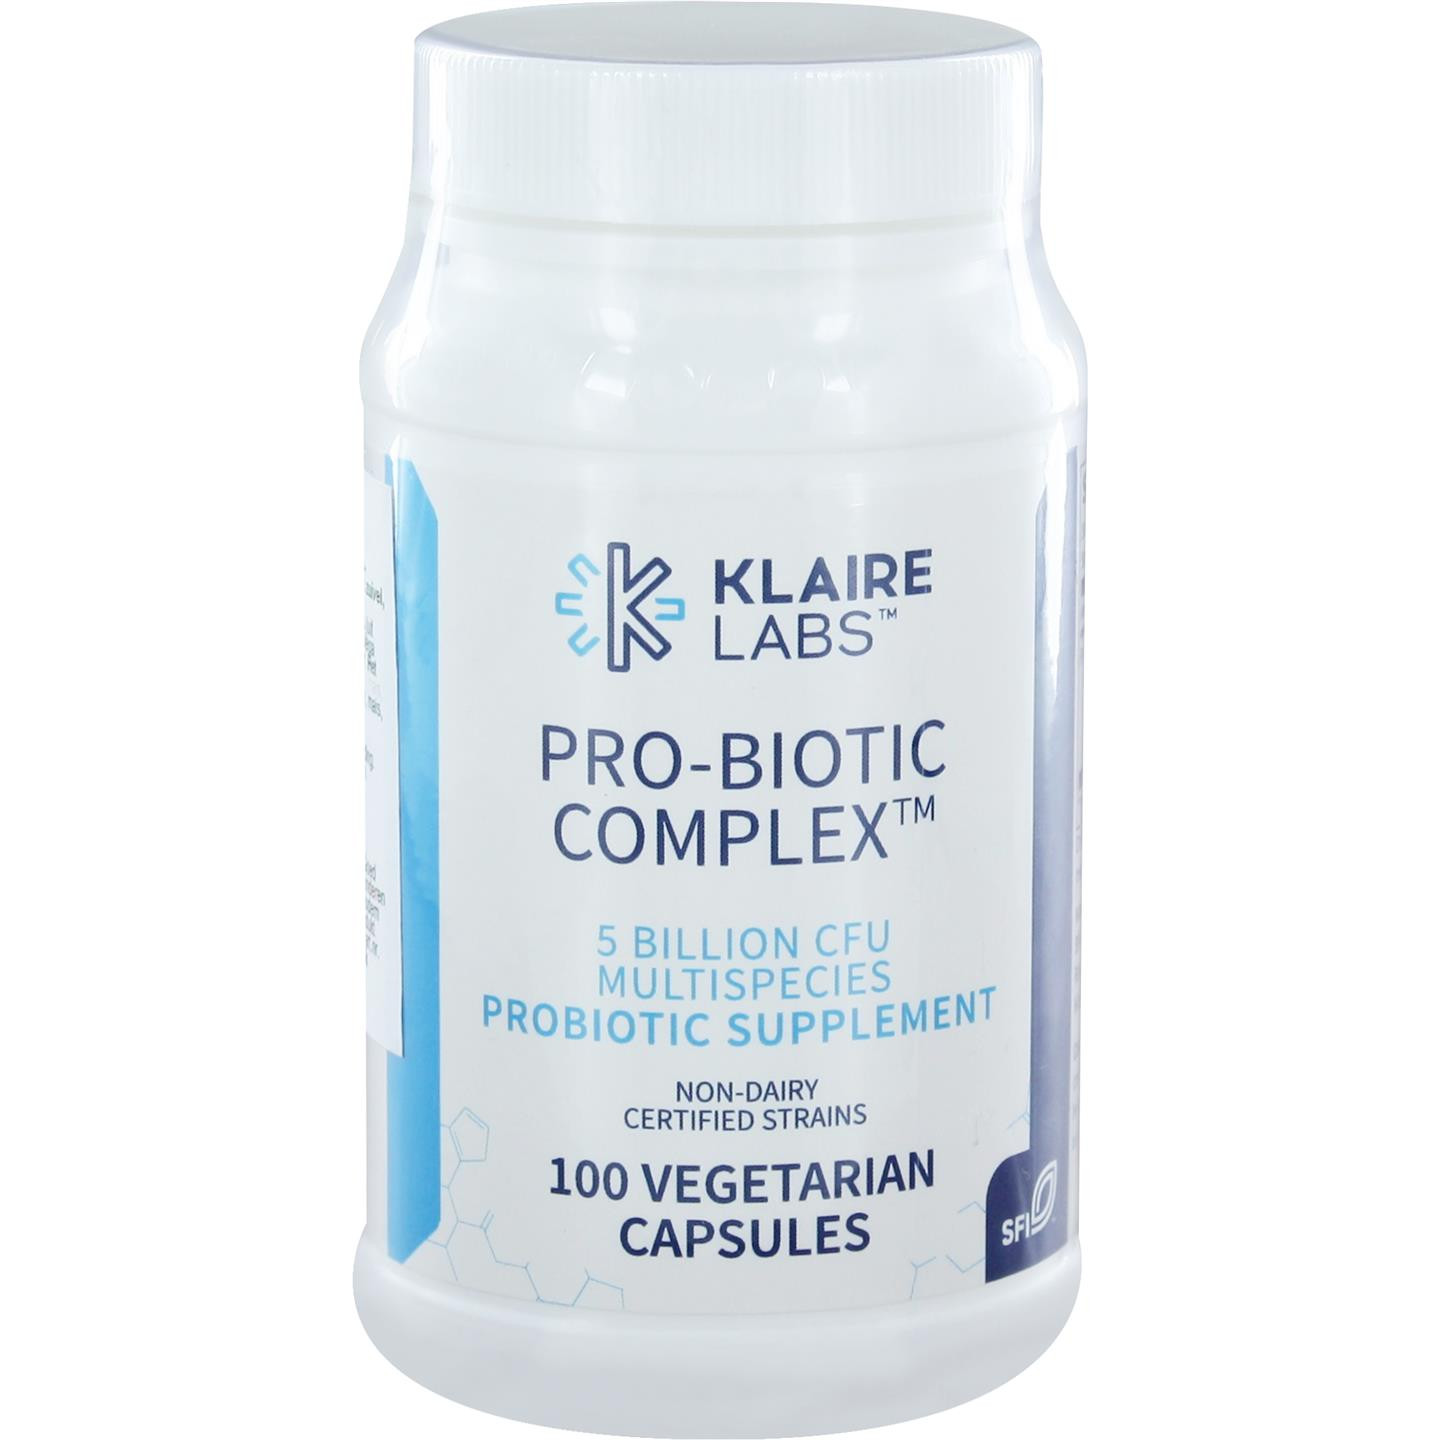 Pro-Biotic complex